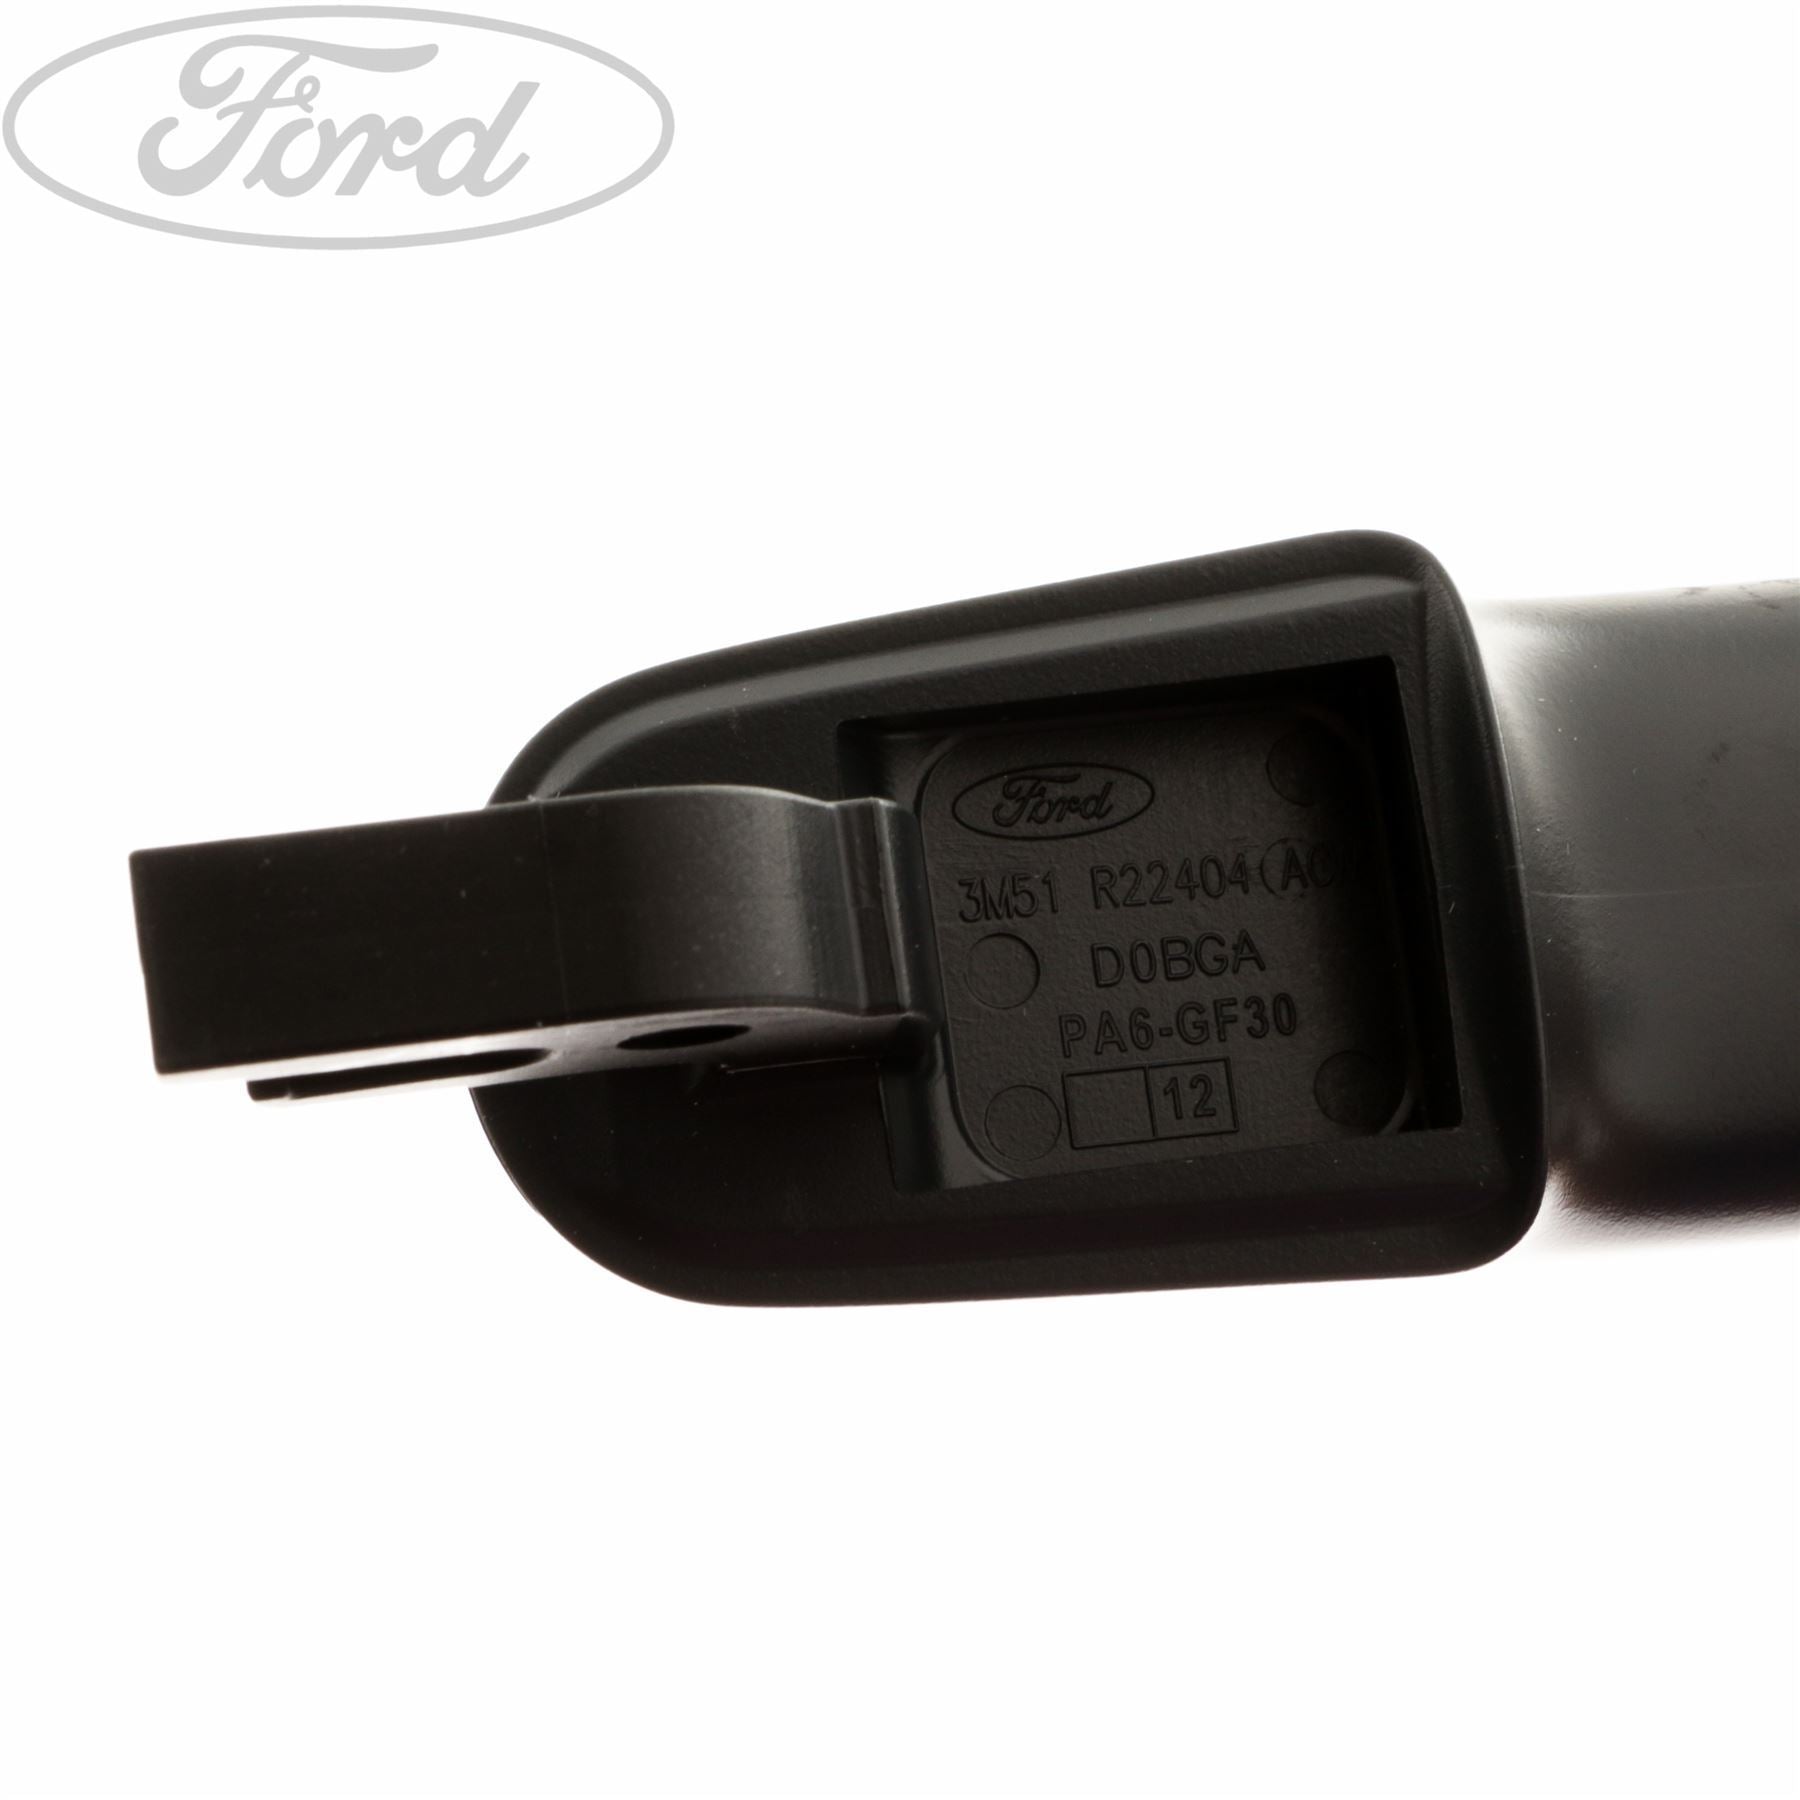 Ford Focus - Türgriff verkratzt - Kosten? (Auto, Auto und Motorrad